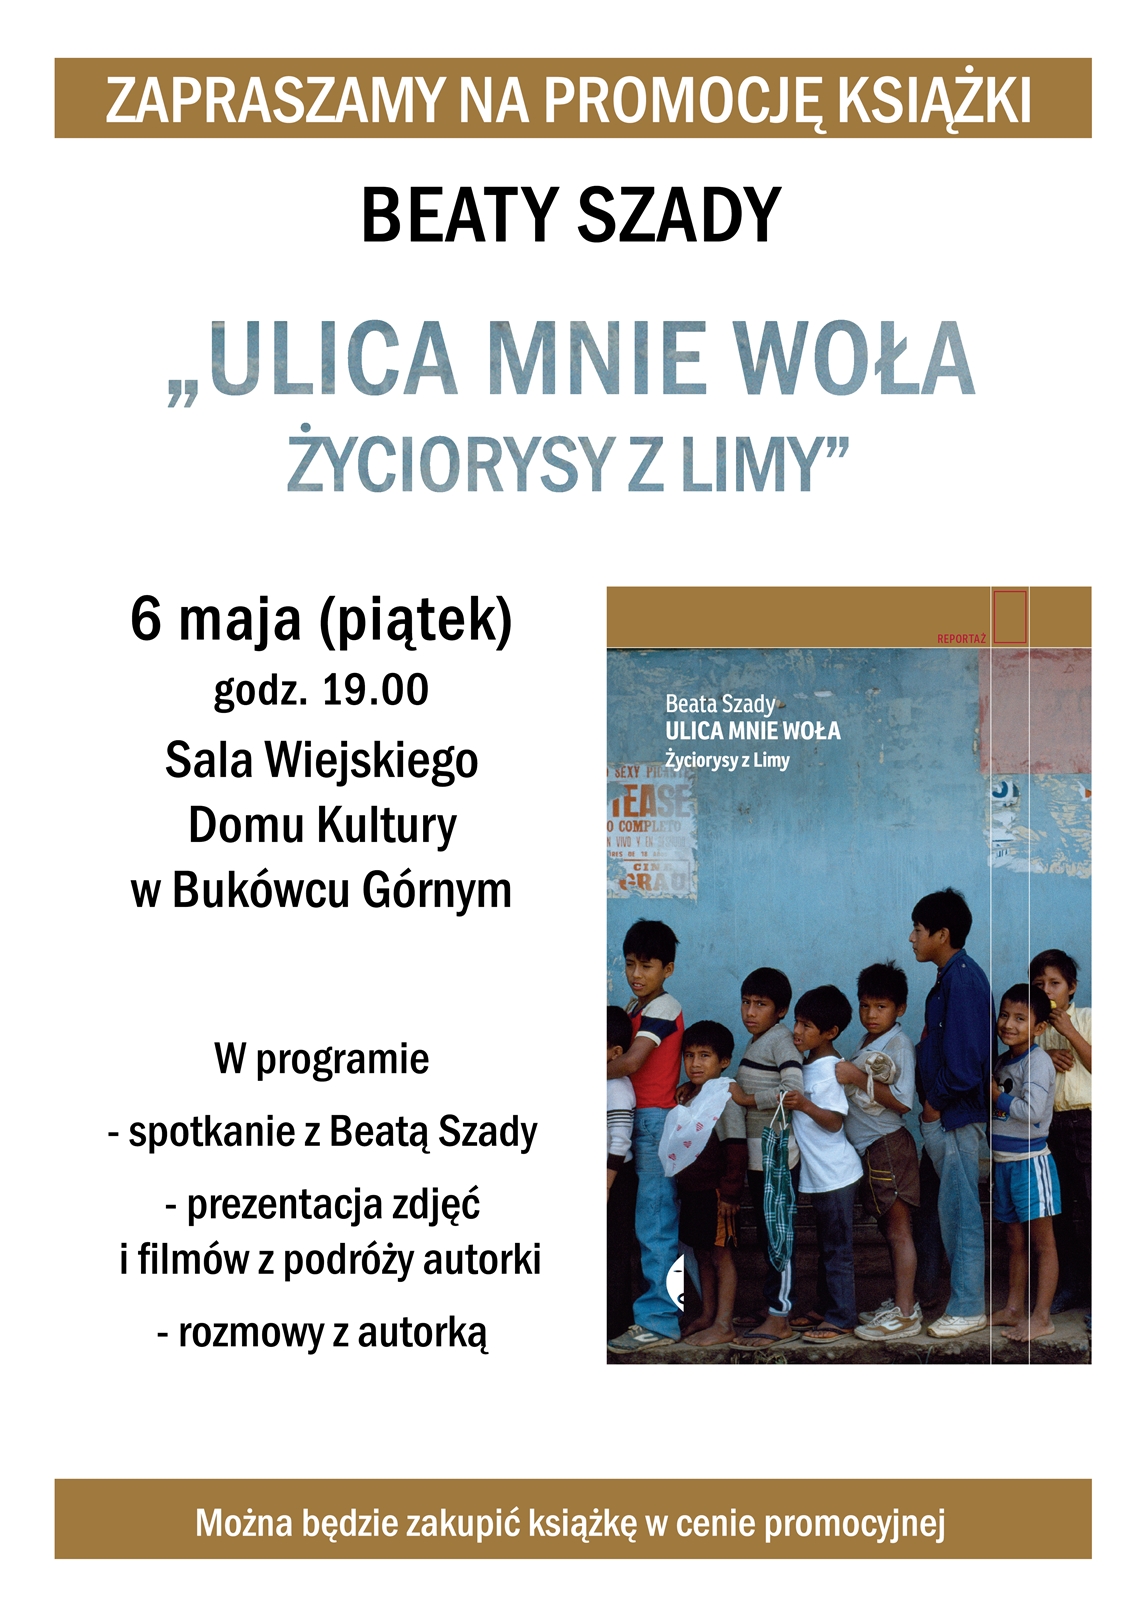 Promocja książki Beaty Szady „Ulica mnie woła, życiorysy z Limy” - zaproszenie